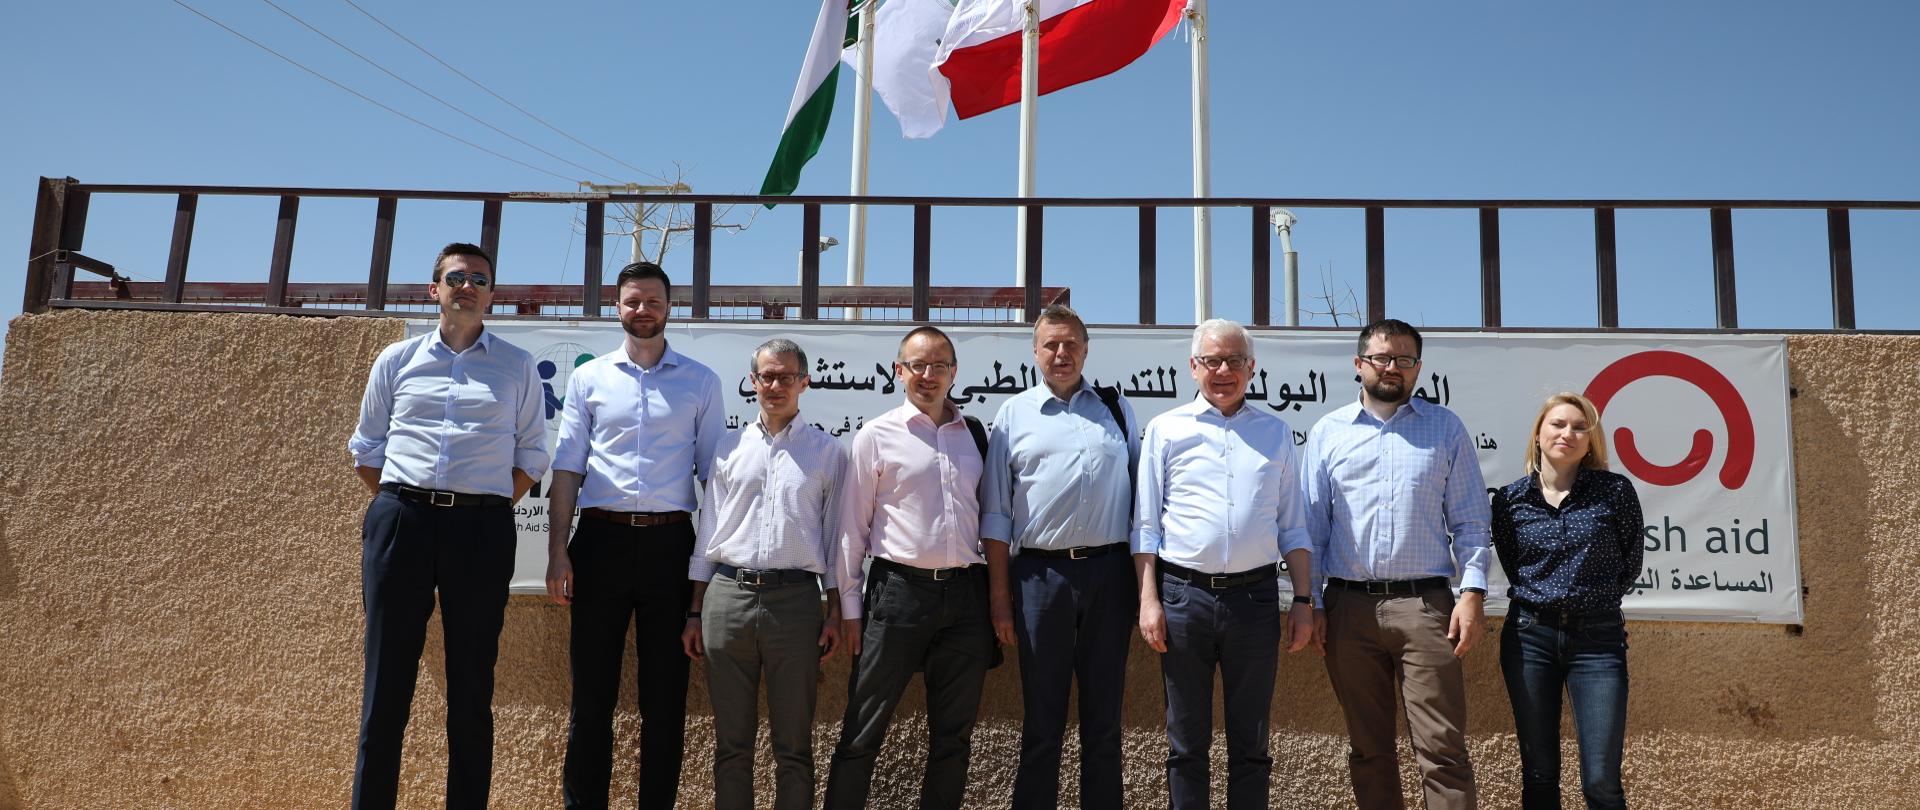 Drugi dzień wizyty ministra Czaputowicza w Jordanii